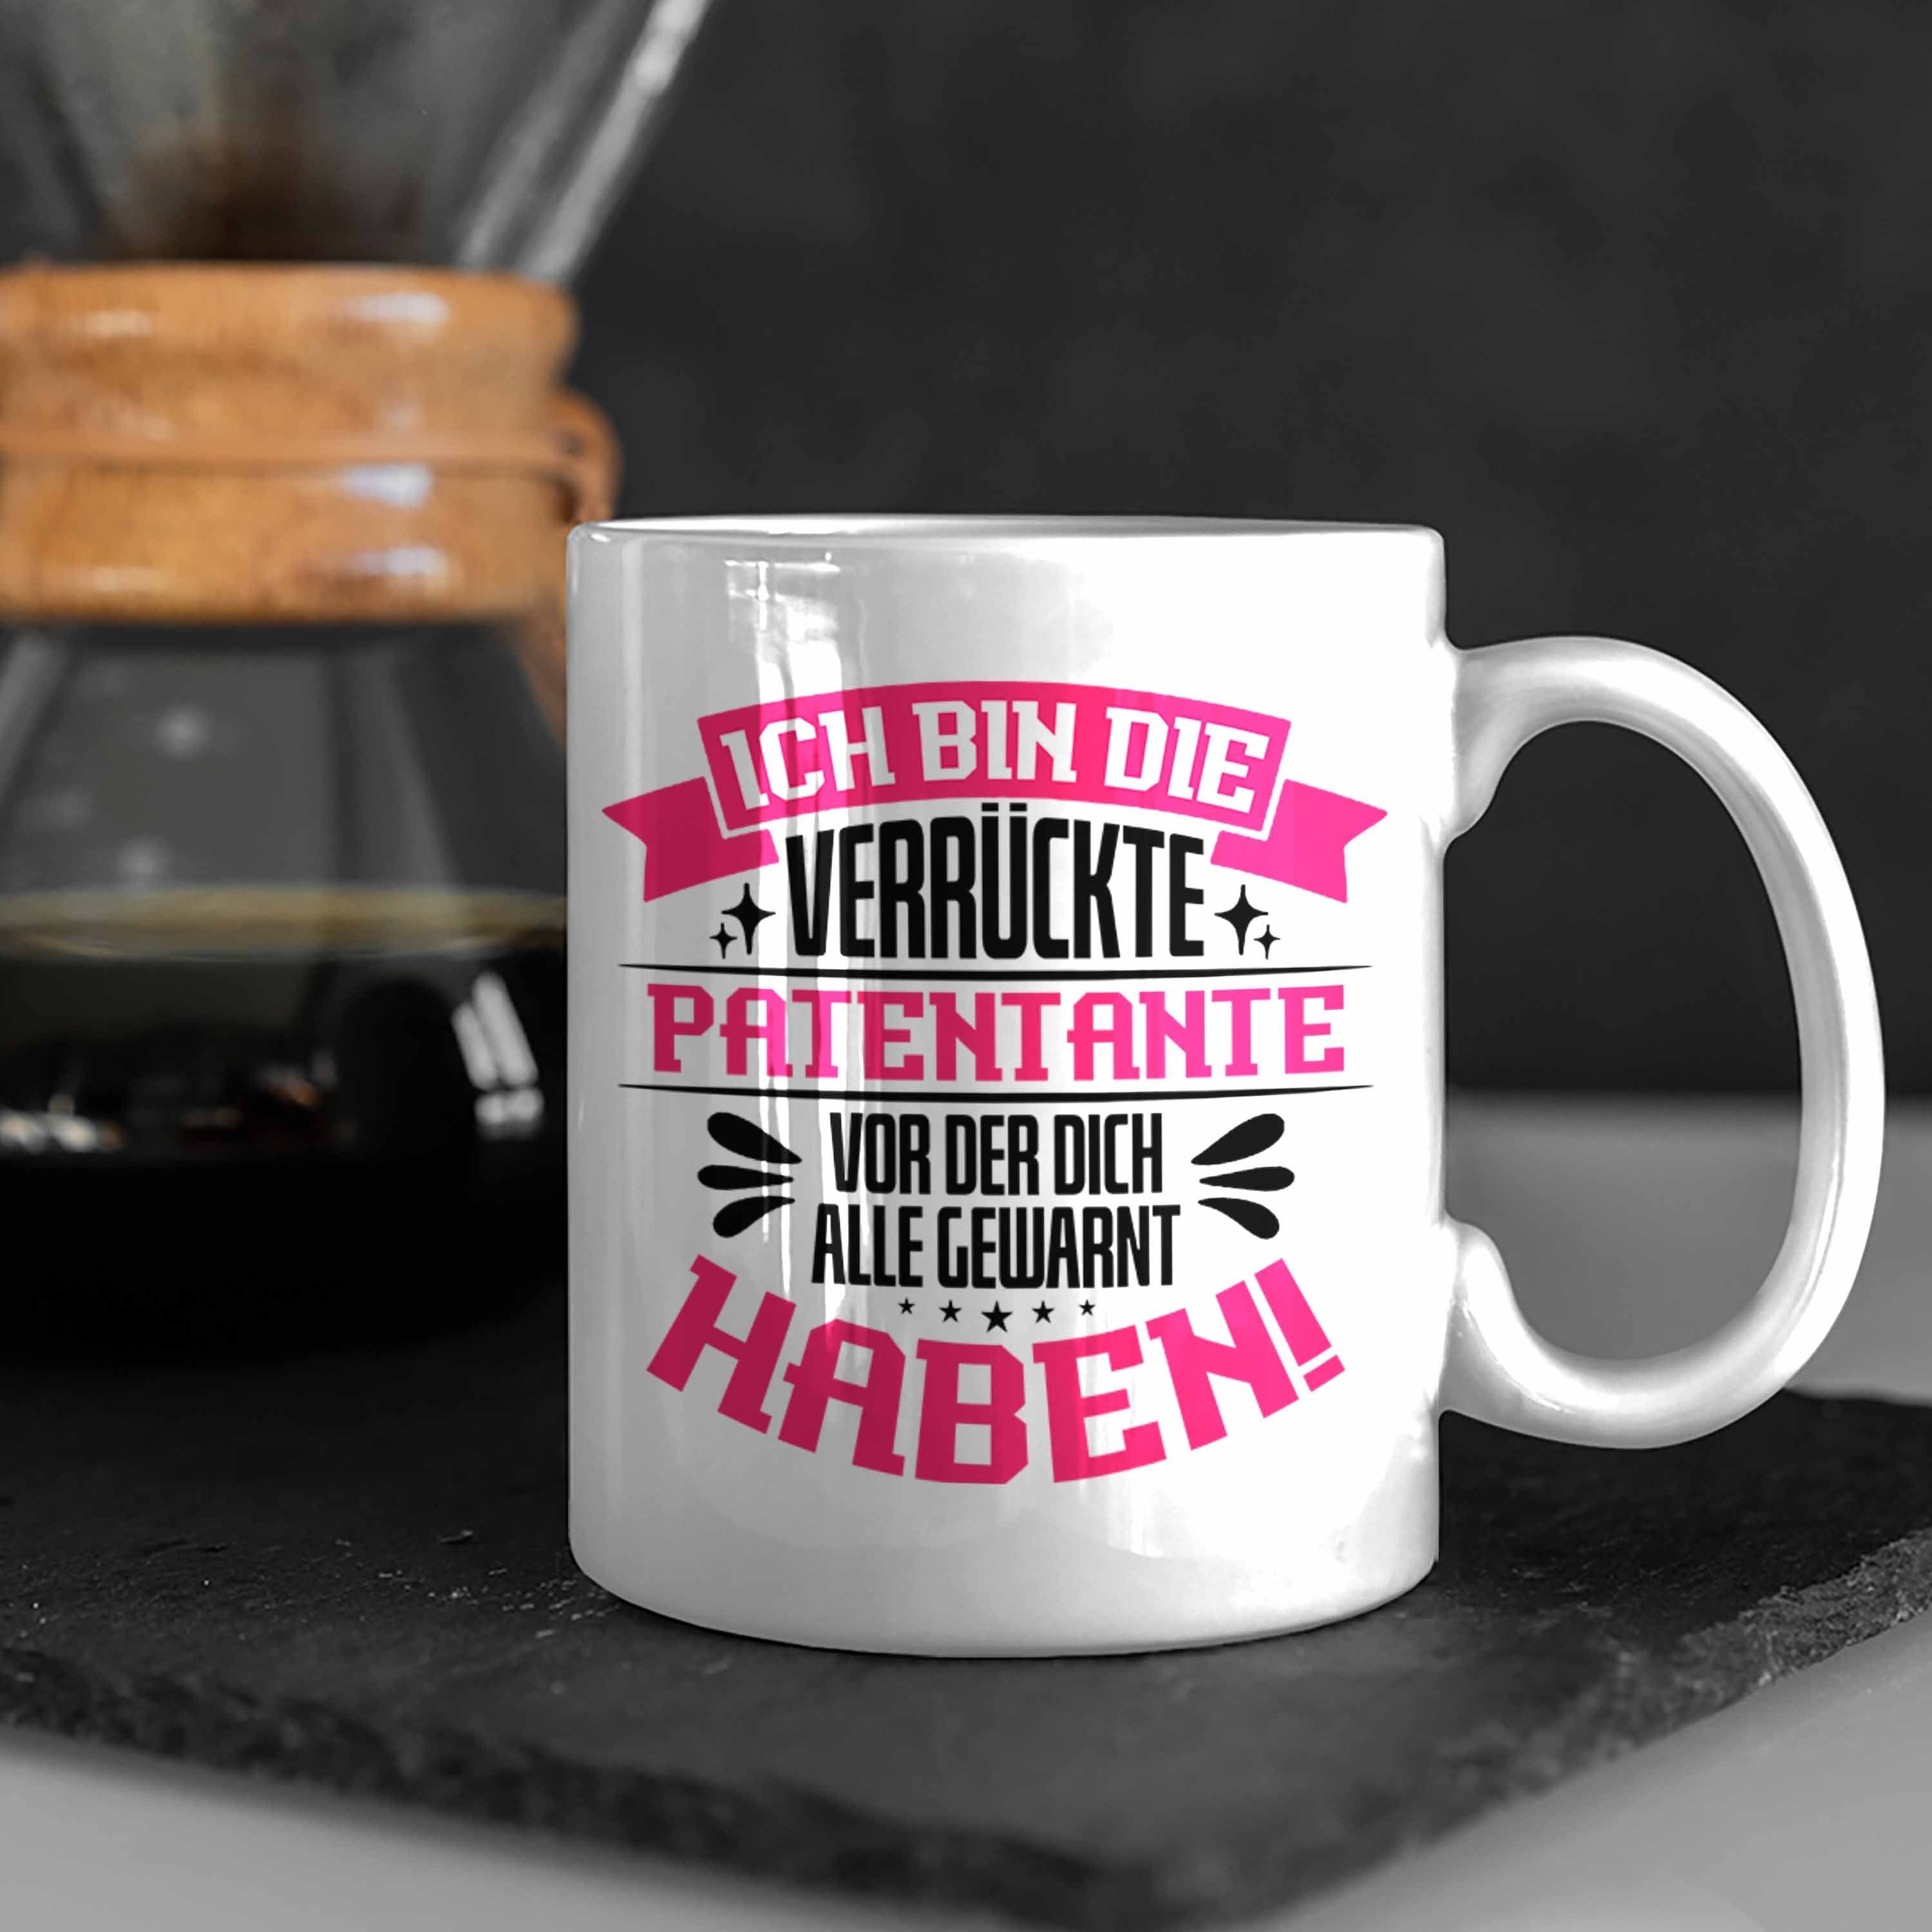 Kaffeet für Tasse Weiss Tasse Lustige Trendation Geschenkidee mit Verrückte Patentante Spruch